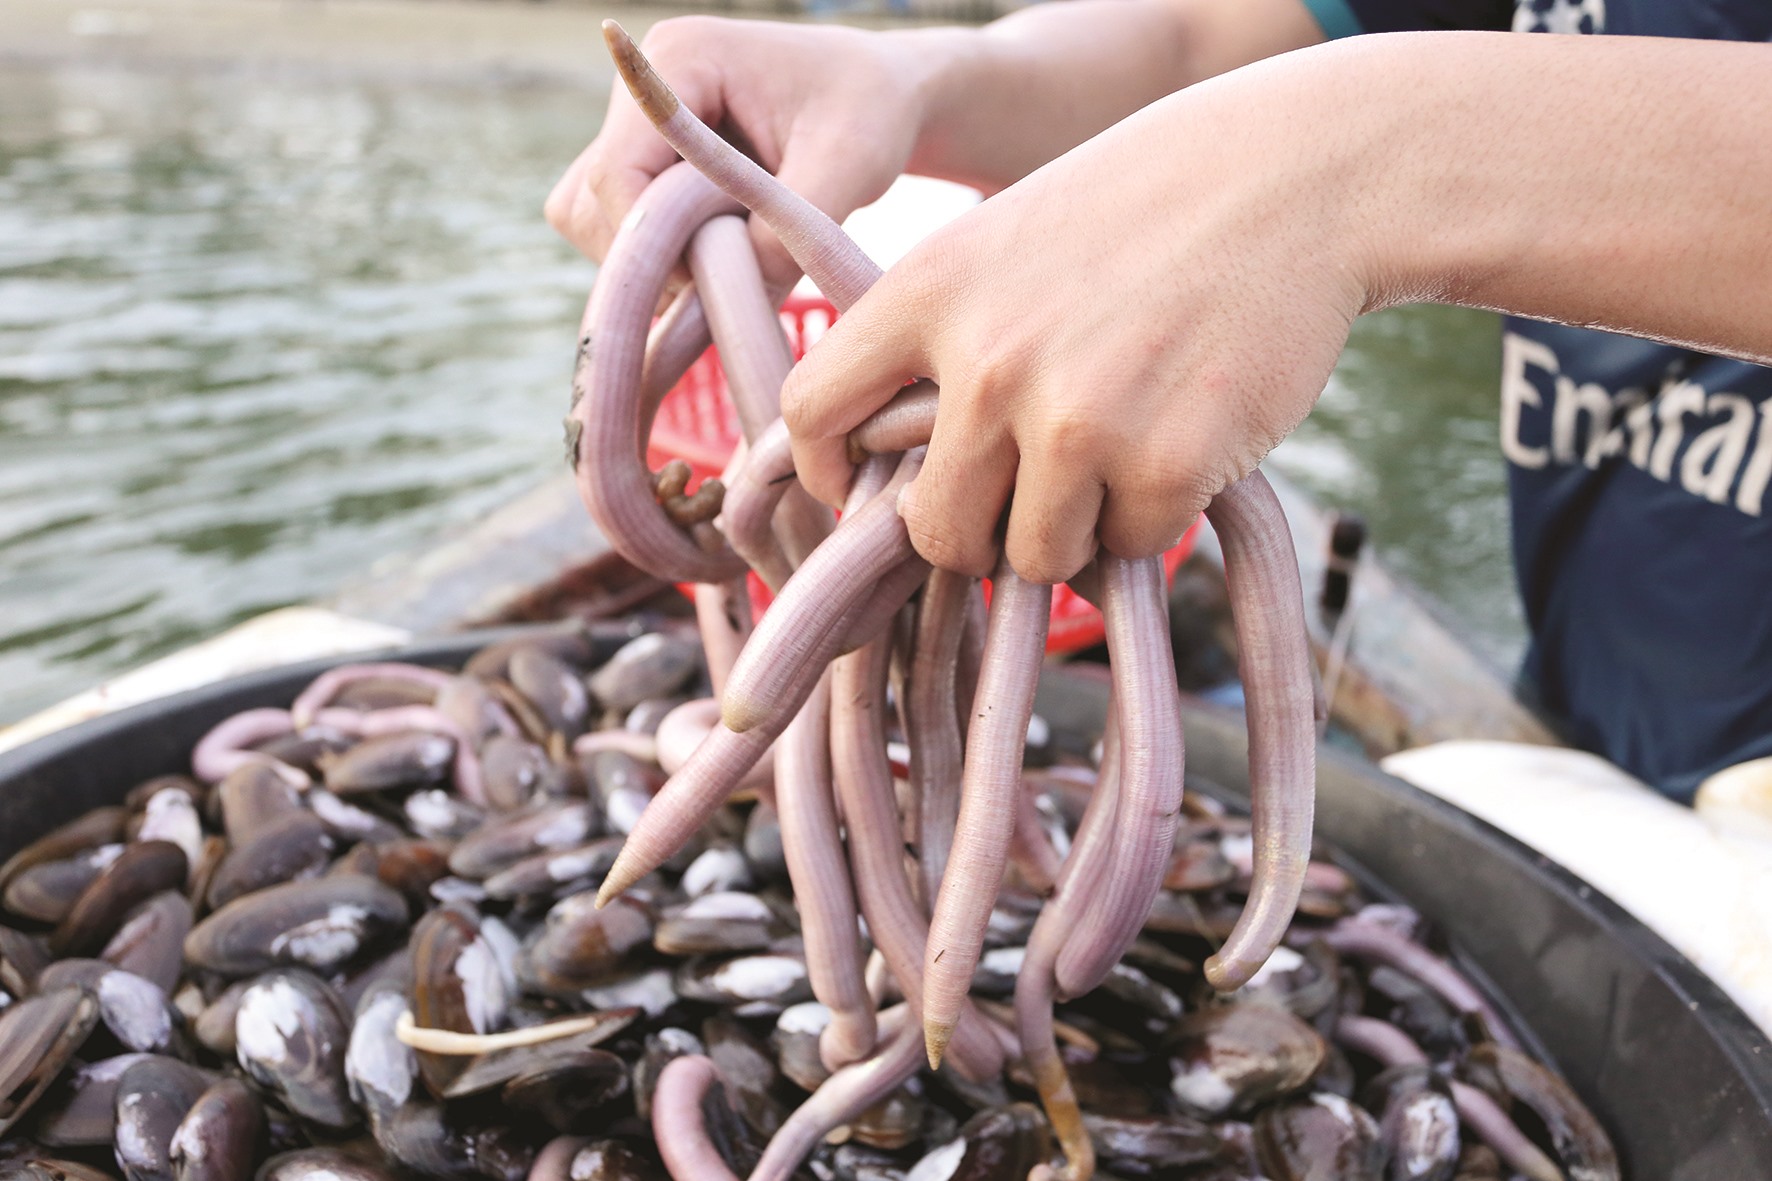 Săn loài hải sản rất giàu chất dinh dưỡng được ví như viagra dưới đáy sông rồi đem phơi khô bán tiền triệu - Ảnh 5.